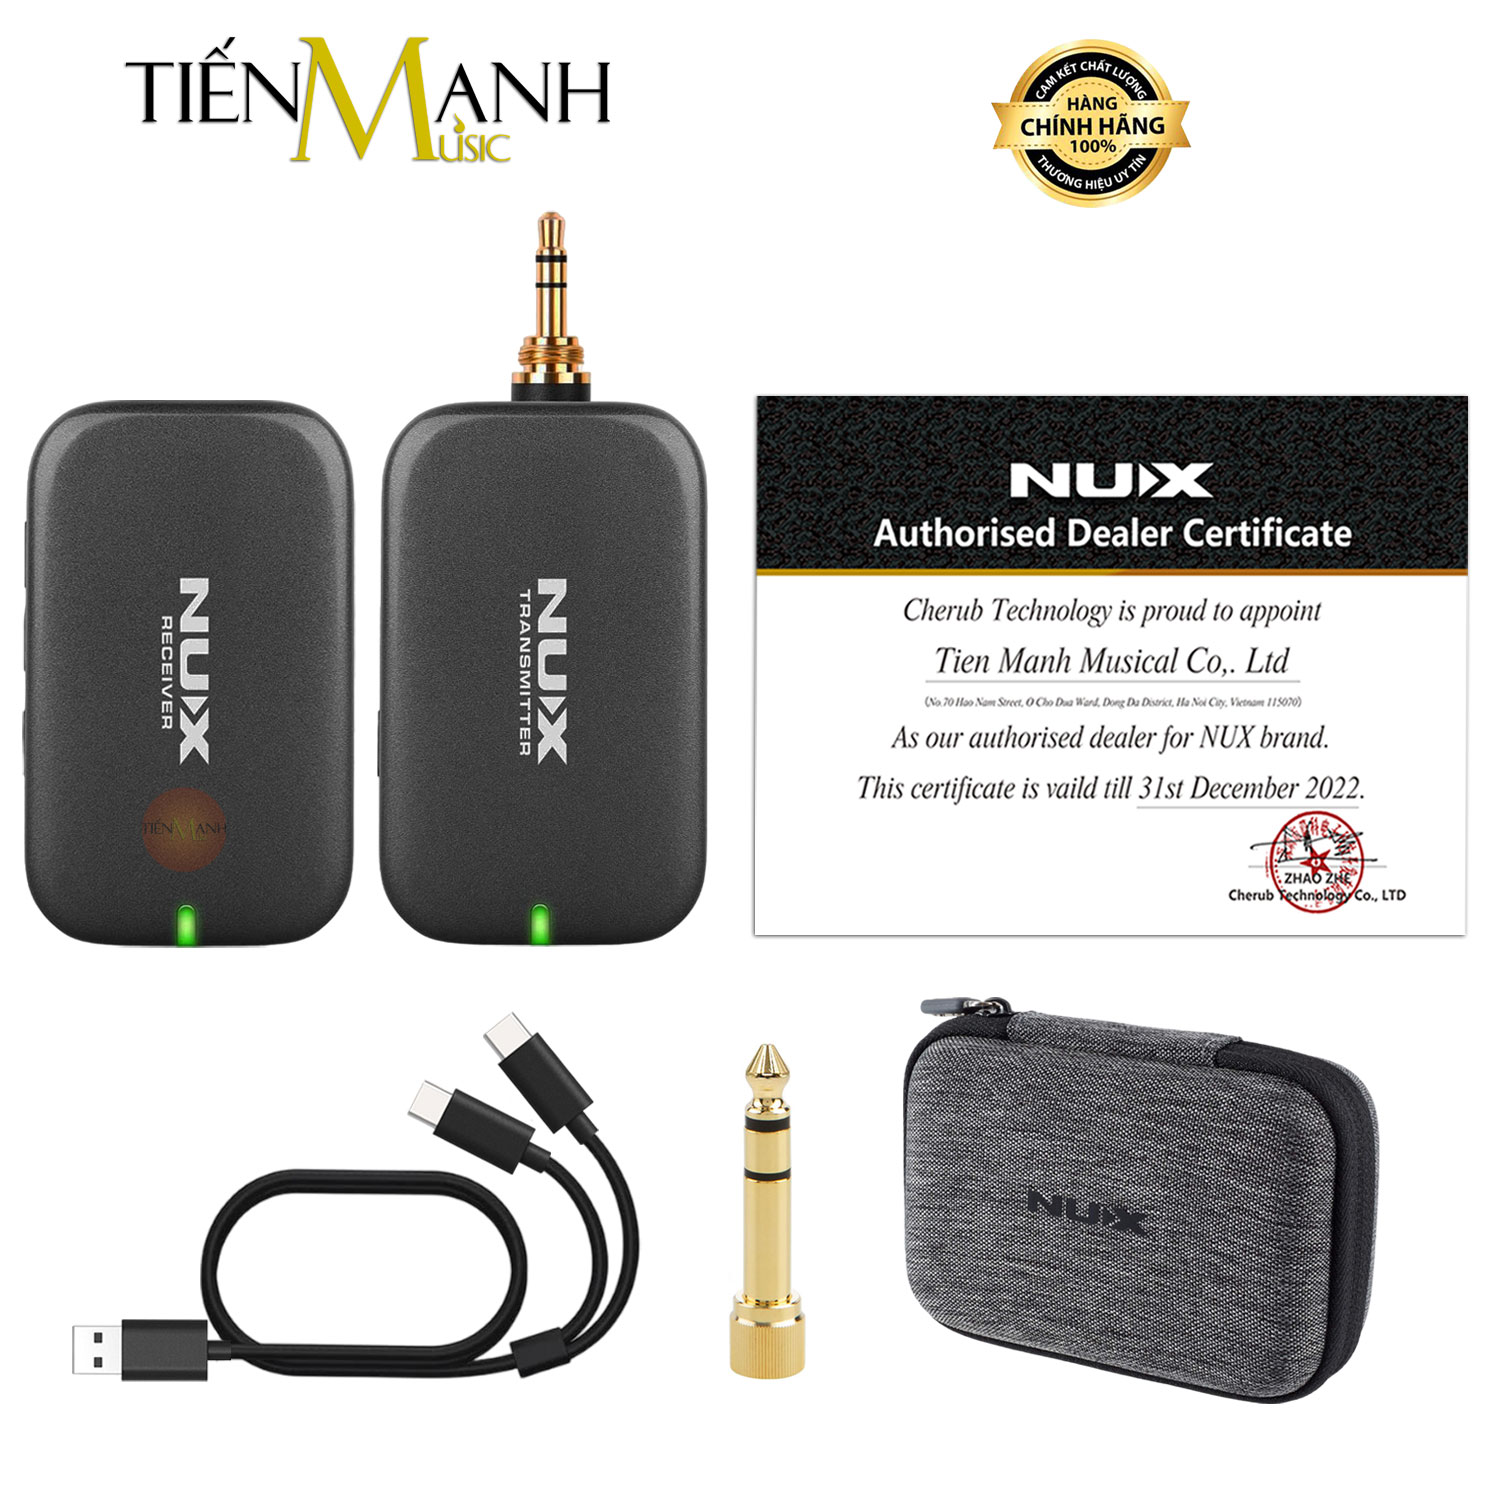 Bộ Thu Phát Audio Stereo Không Dây Nux B7PSM 5.8GHz Wireless